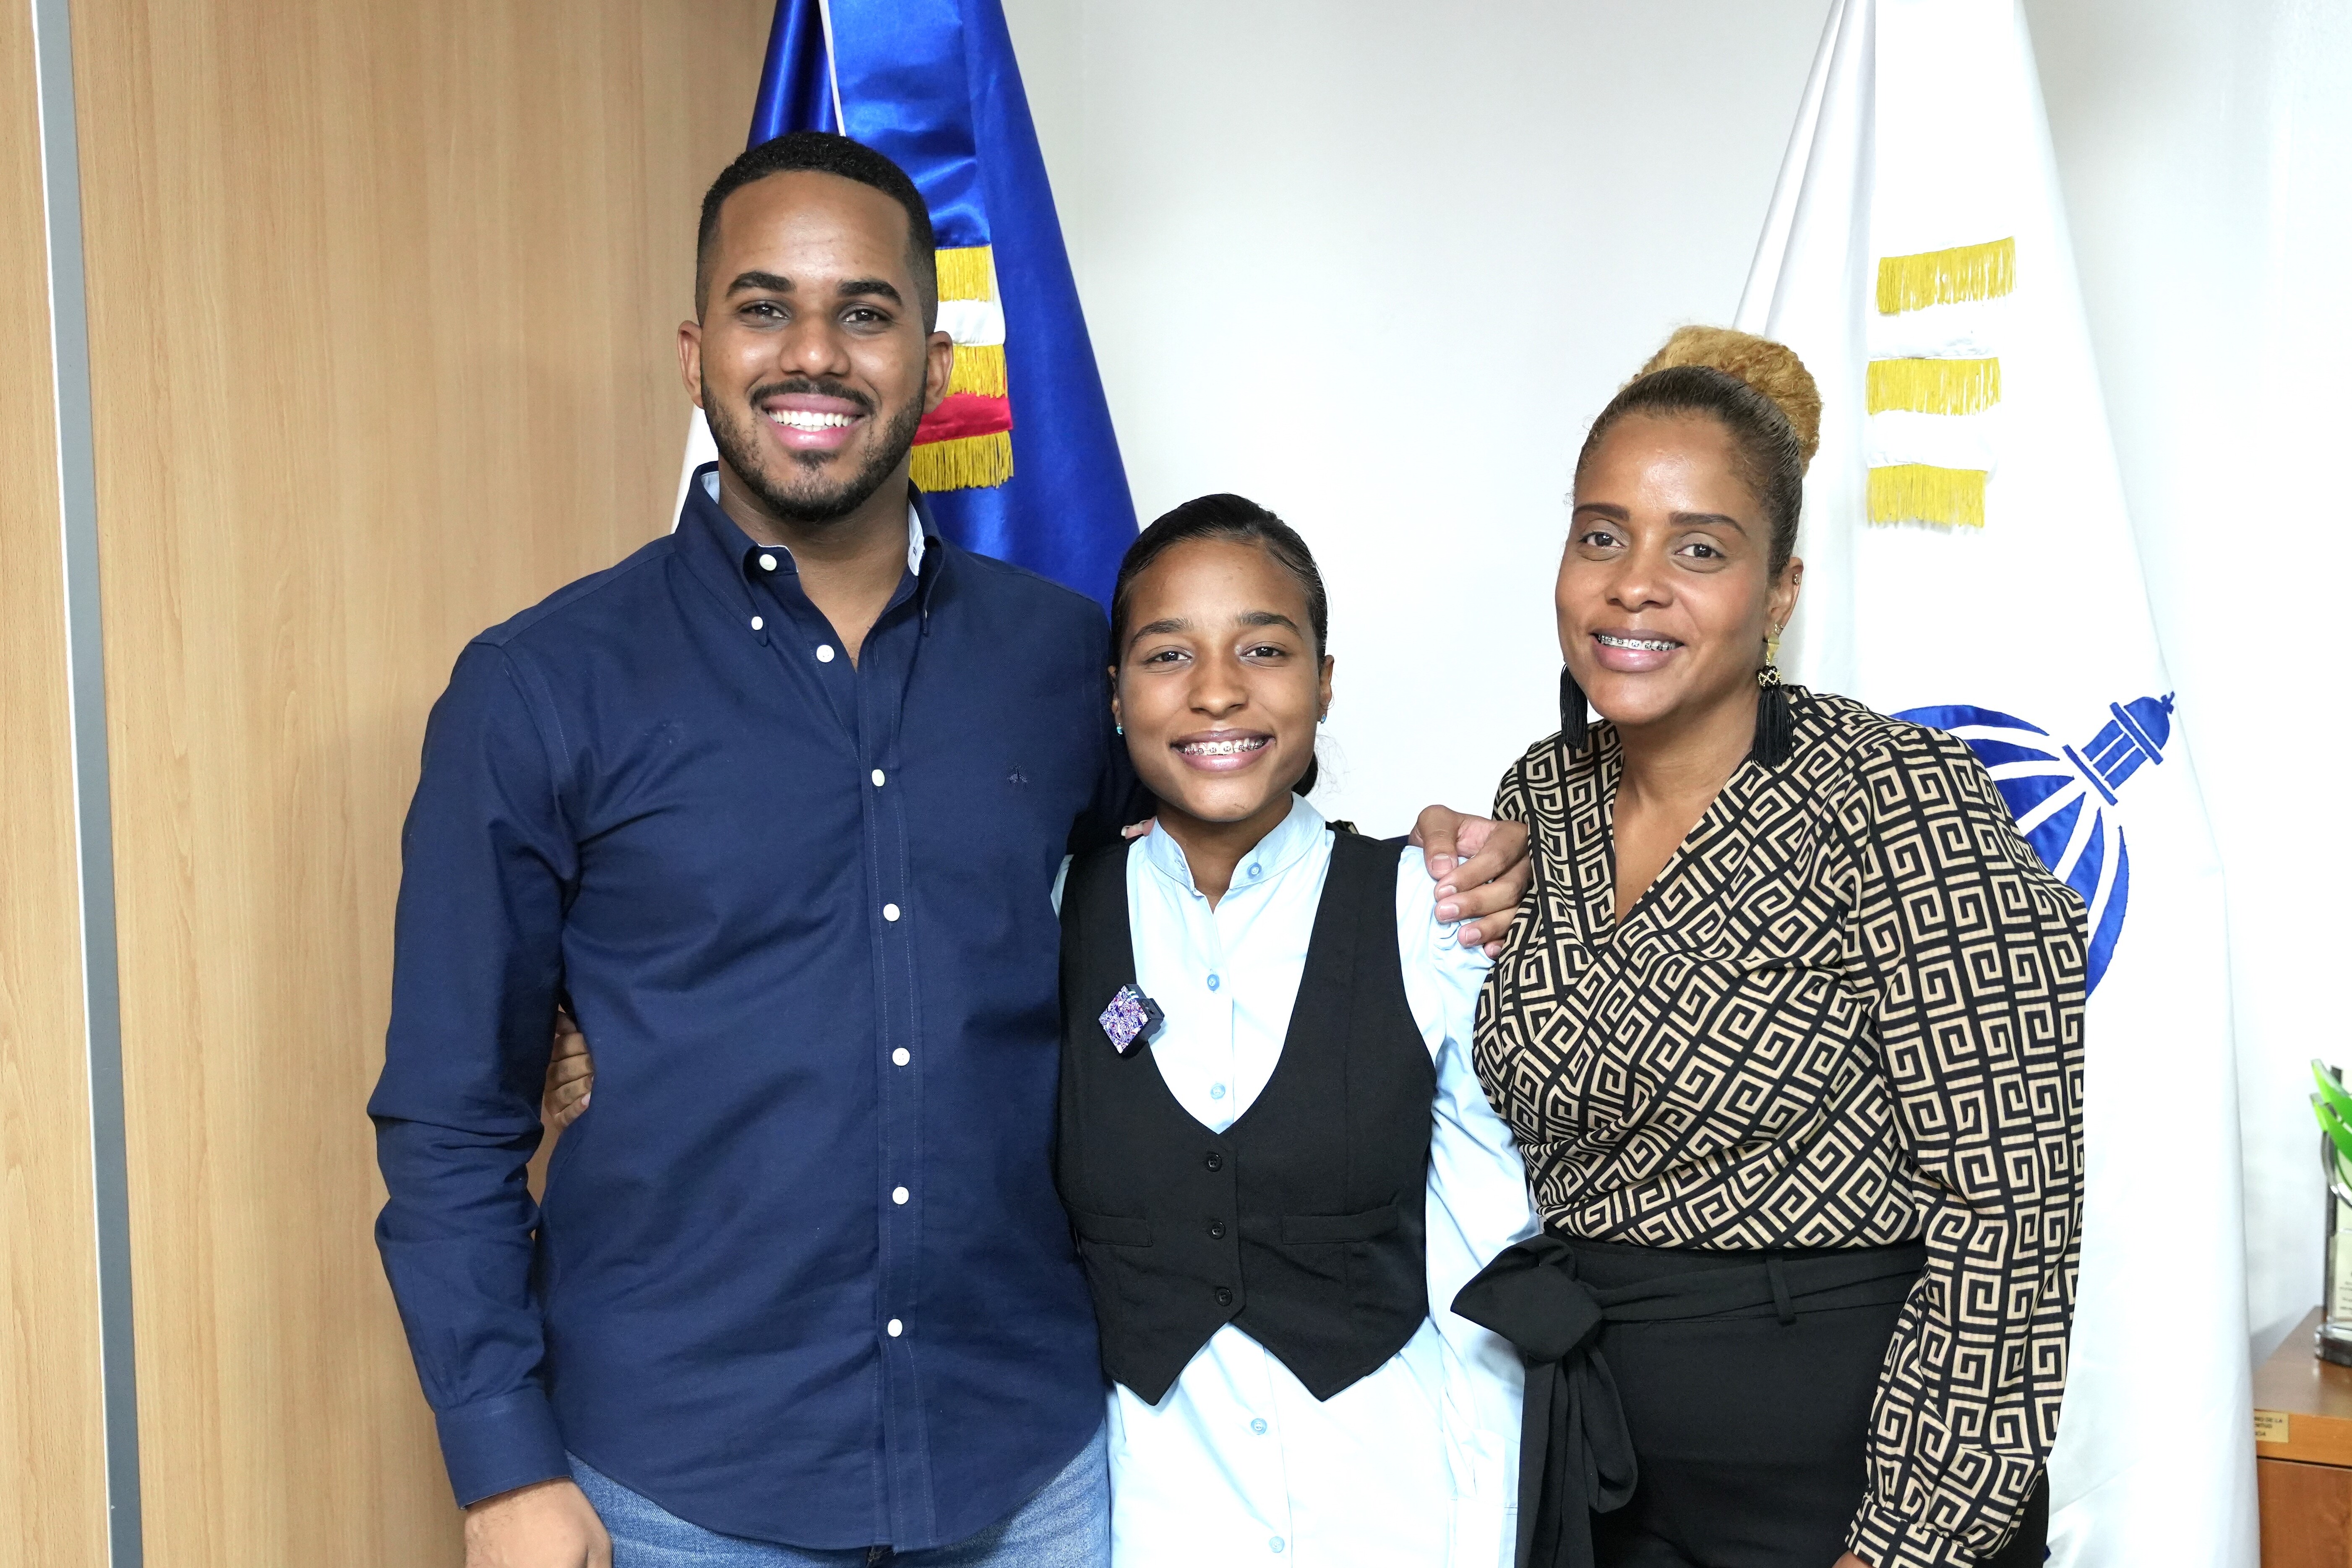 REPÚBLICA DOMINICANA: Ministerio de la Juventud apoyará estudiante ganadora de beca internacional